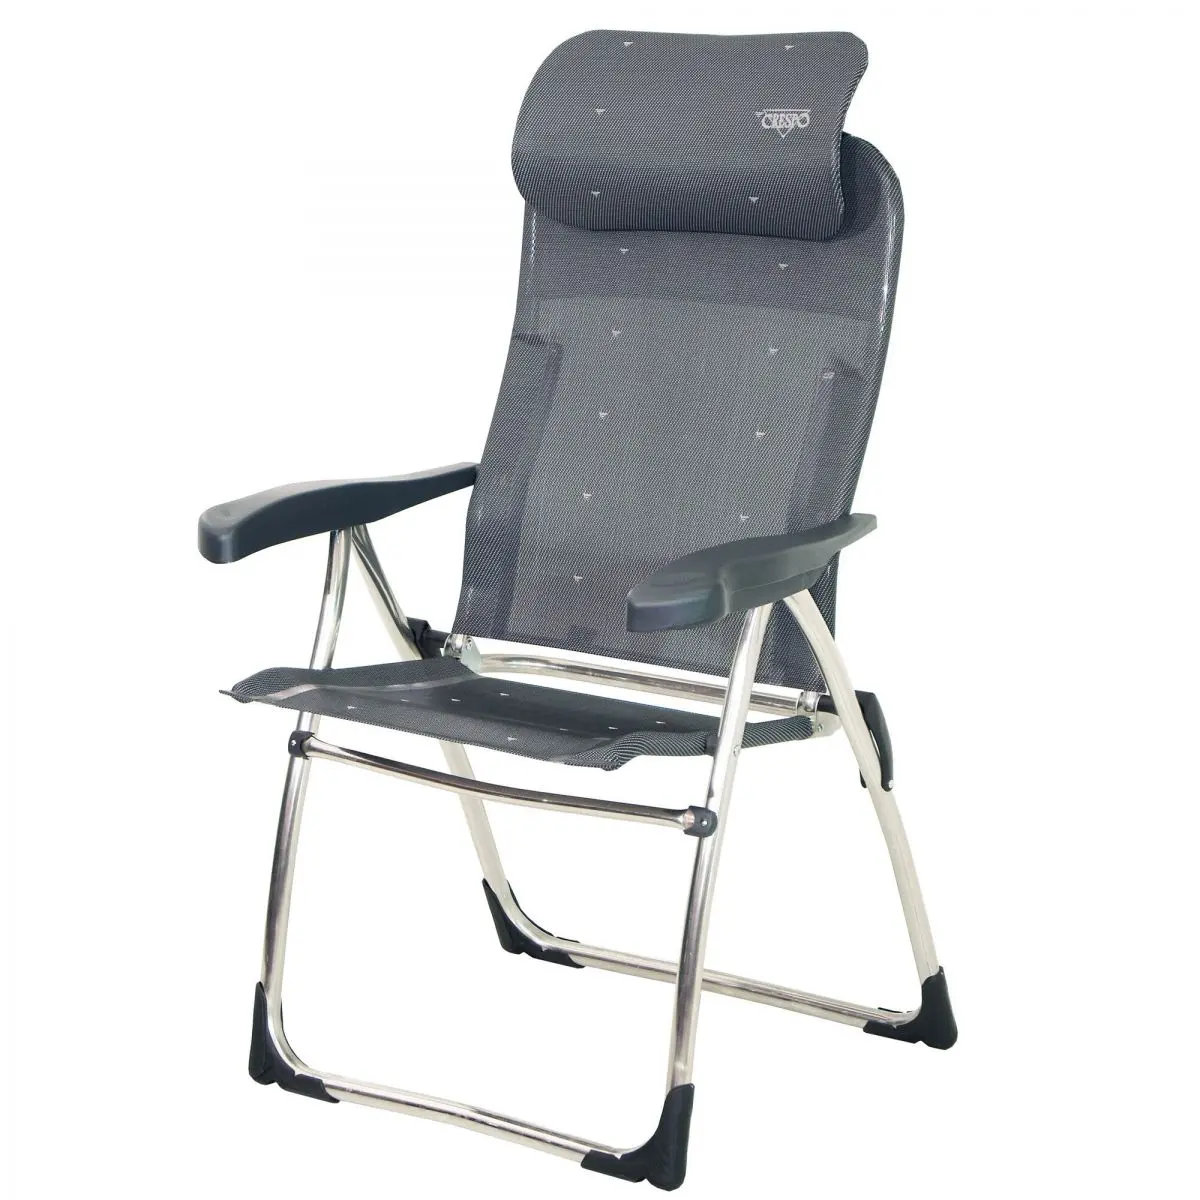 Kempingová stolička AL/215-C - 64 x 119 x 64 cm